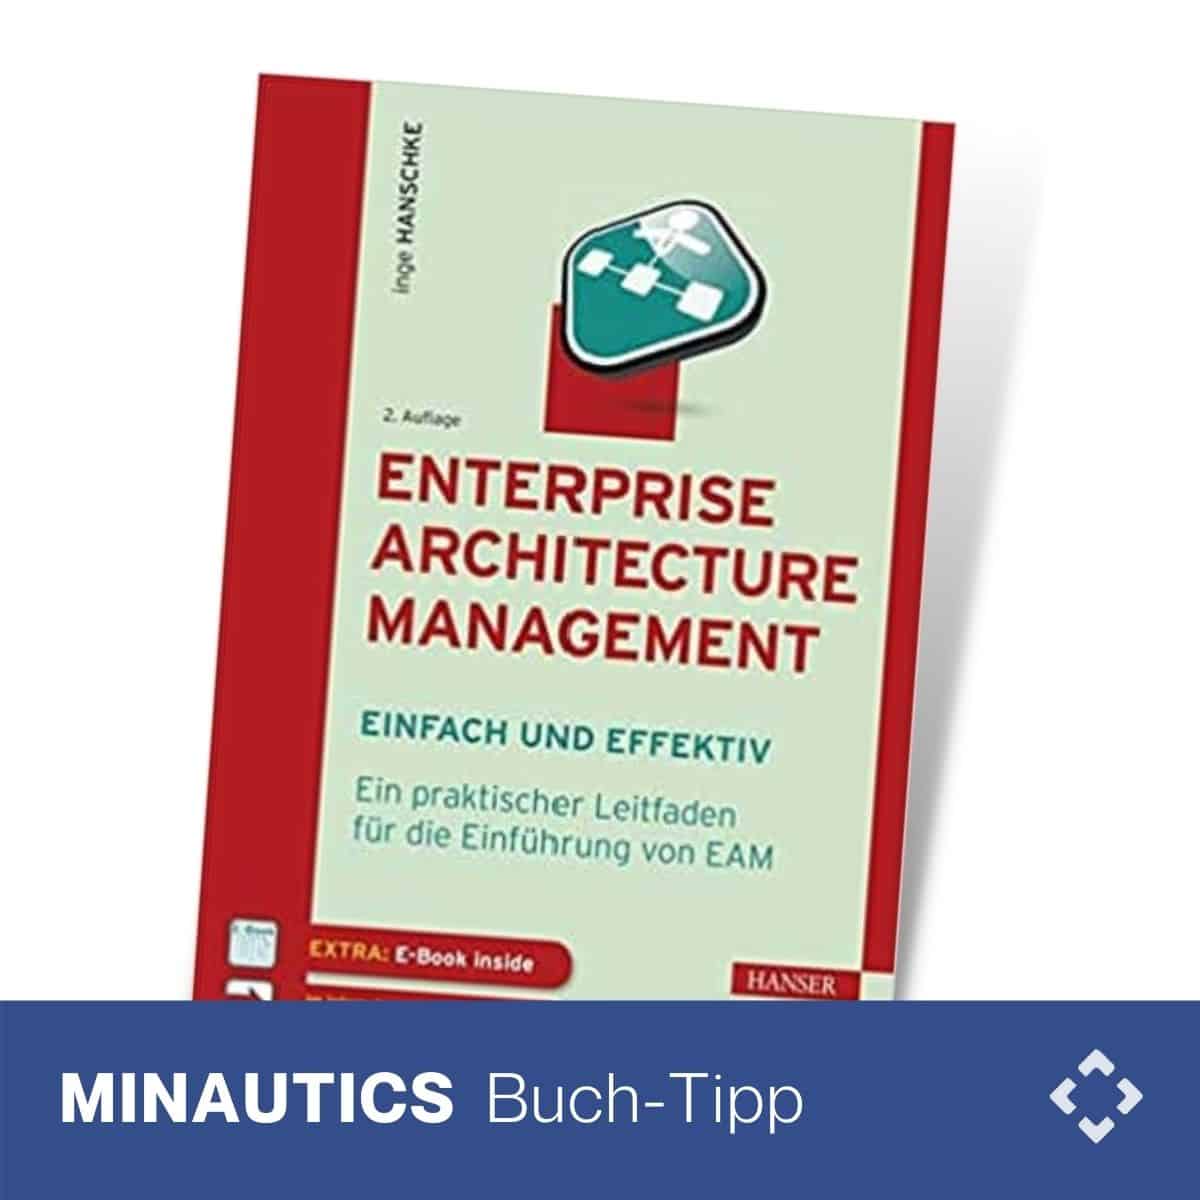 Enterprise Architecture Management – einfach und effektiv 0 (0)